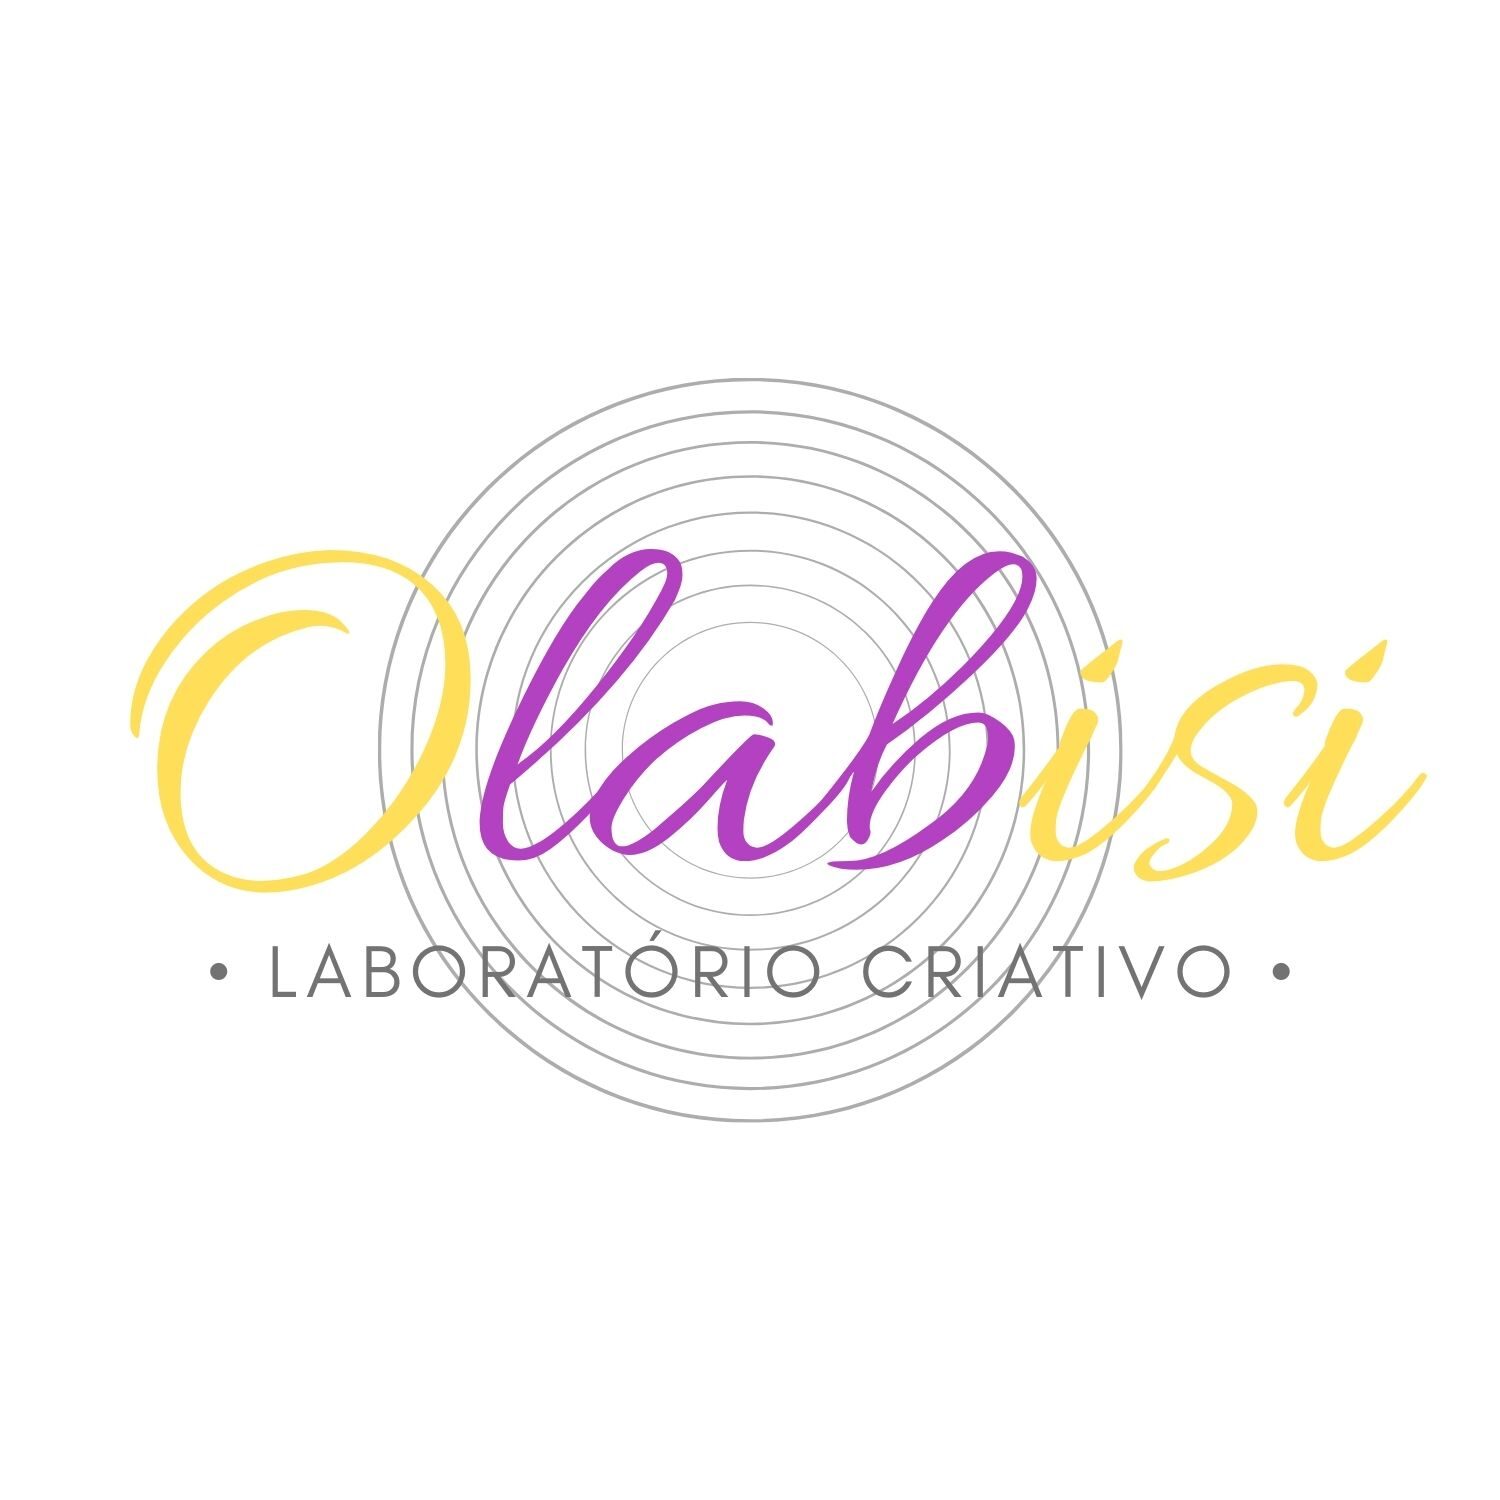 Olabisi Laboratório Criativo